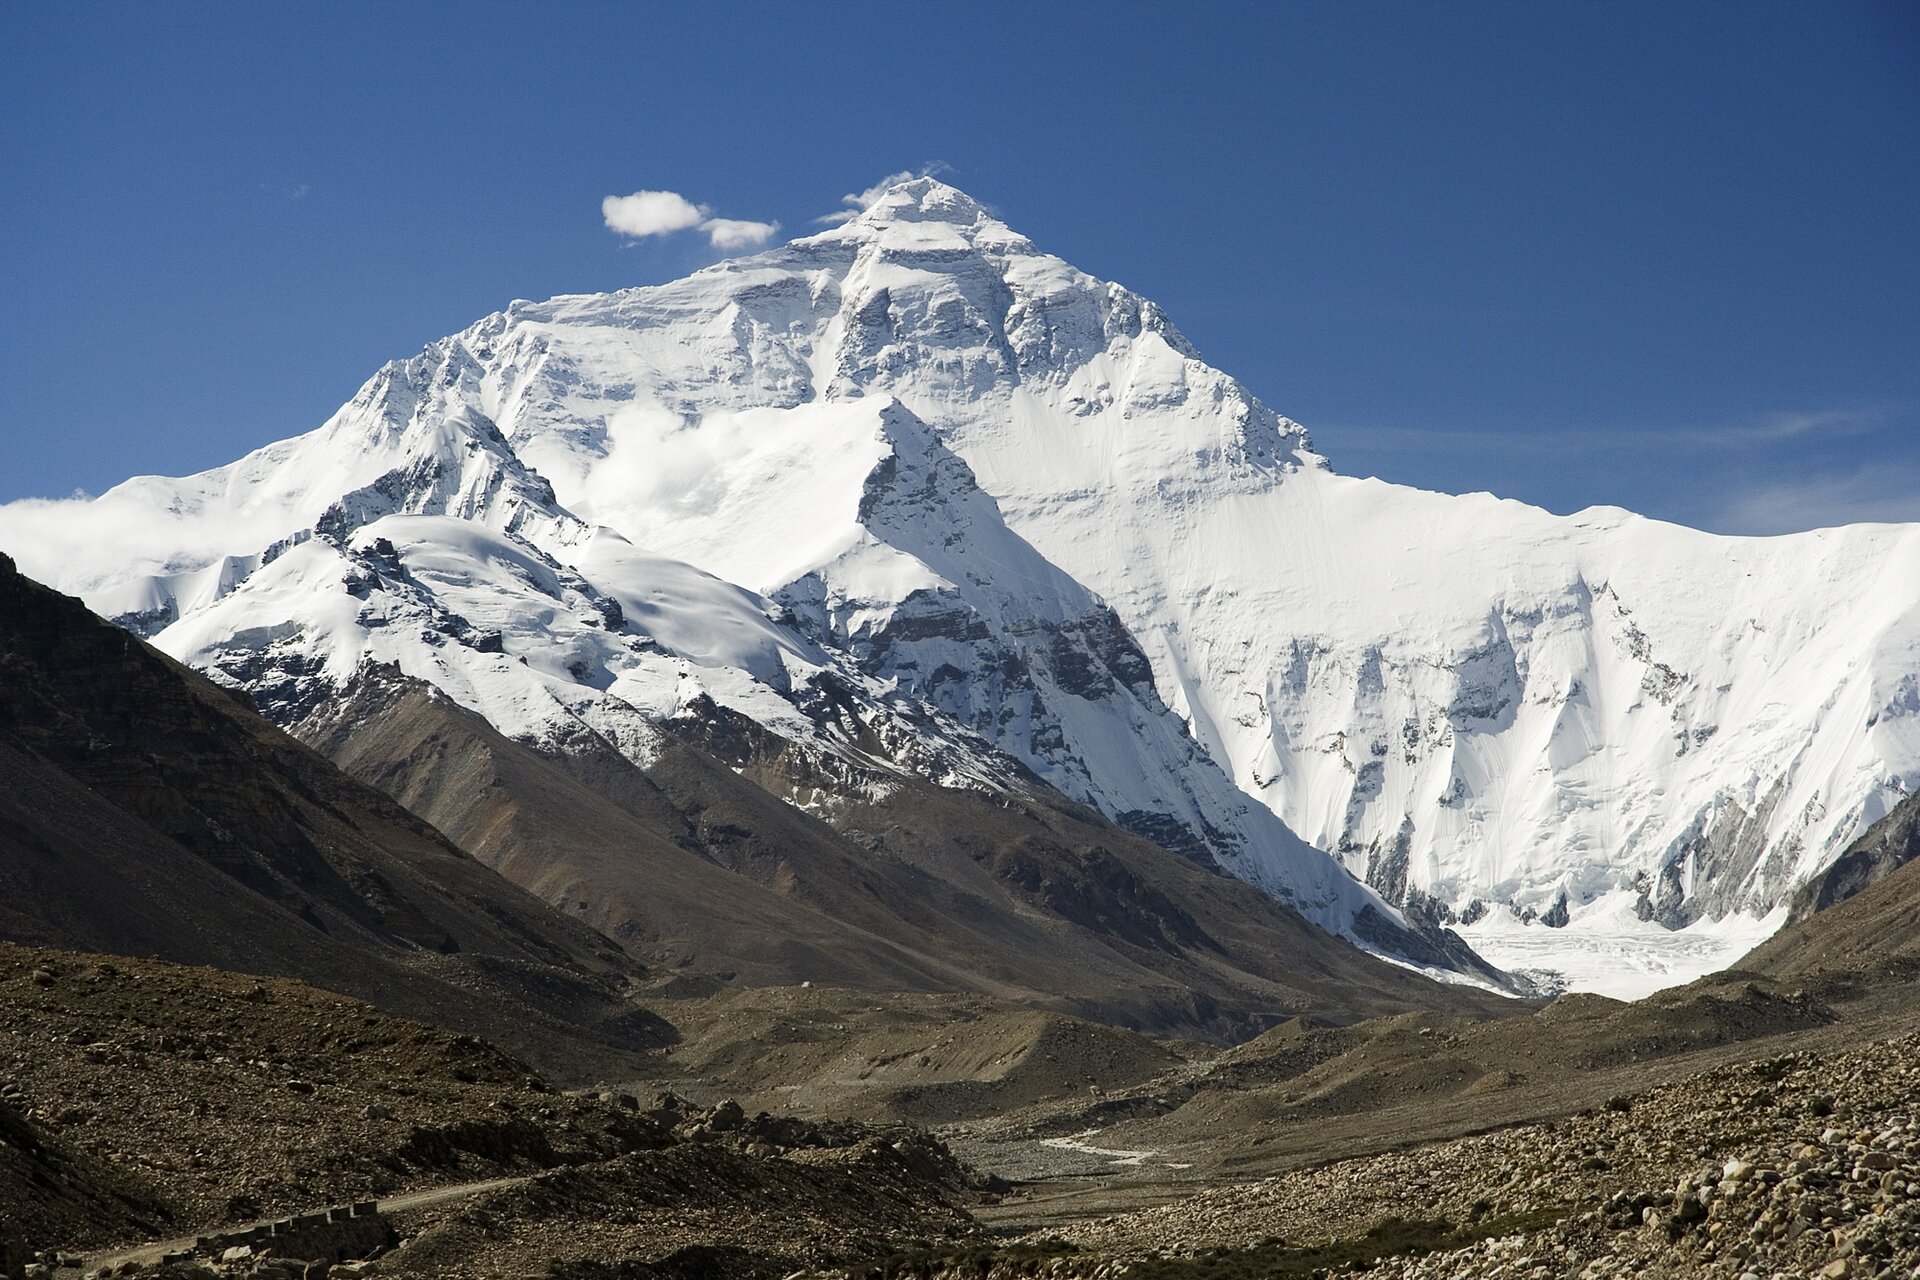 Zdjęcie przedstawia pasmo górskie. To fragment najwyższych gór świata Himalajów. Pasmo górskie pokryte jest śniegiem. W środkowej części pasma najwyższy szczyt w kształcie trójkąta. To Mount Everest, najwyższa góra świata. Skalisty, pokryty śniegiem i oświetlony promieniami słonecznymi szczyt góry kontrastuje z kamienistym, brązowym terenem rozpościerającym się u stóp Mount Everestu. W dole ilustracji widoczne ścieżki. Niebo błękitne.